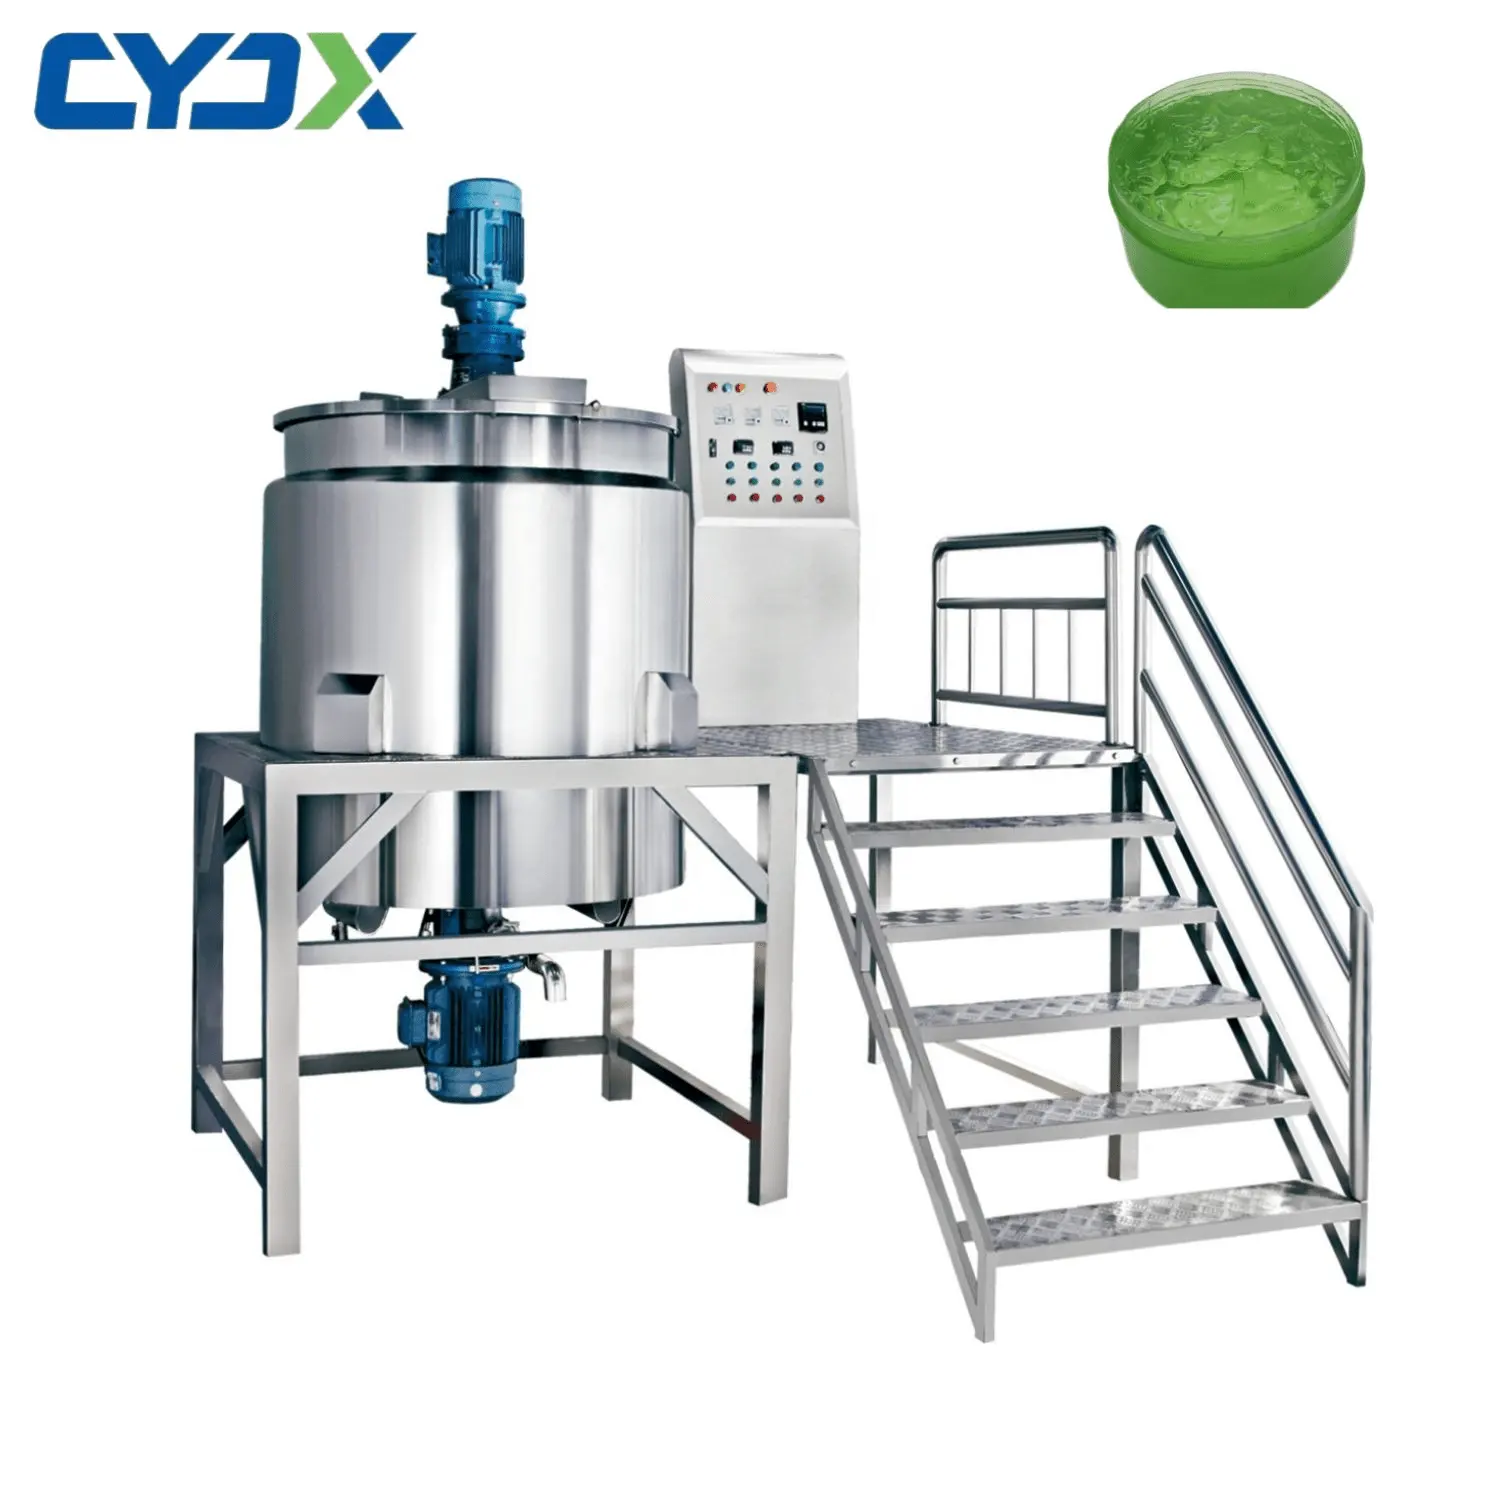 CYJX Sus316 macchinari di miscelazione per l'industria chimica quotidiana detersivo sapone liquido miscelatore Shampoo e Gel doccia serbatoio di miscelazione